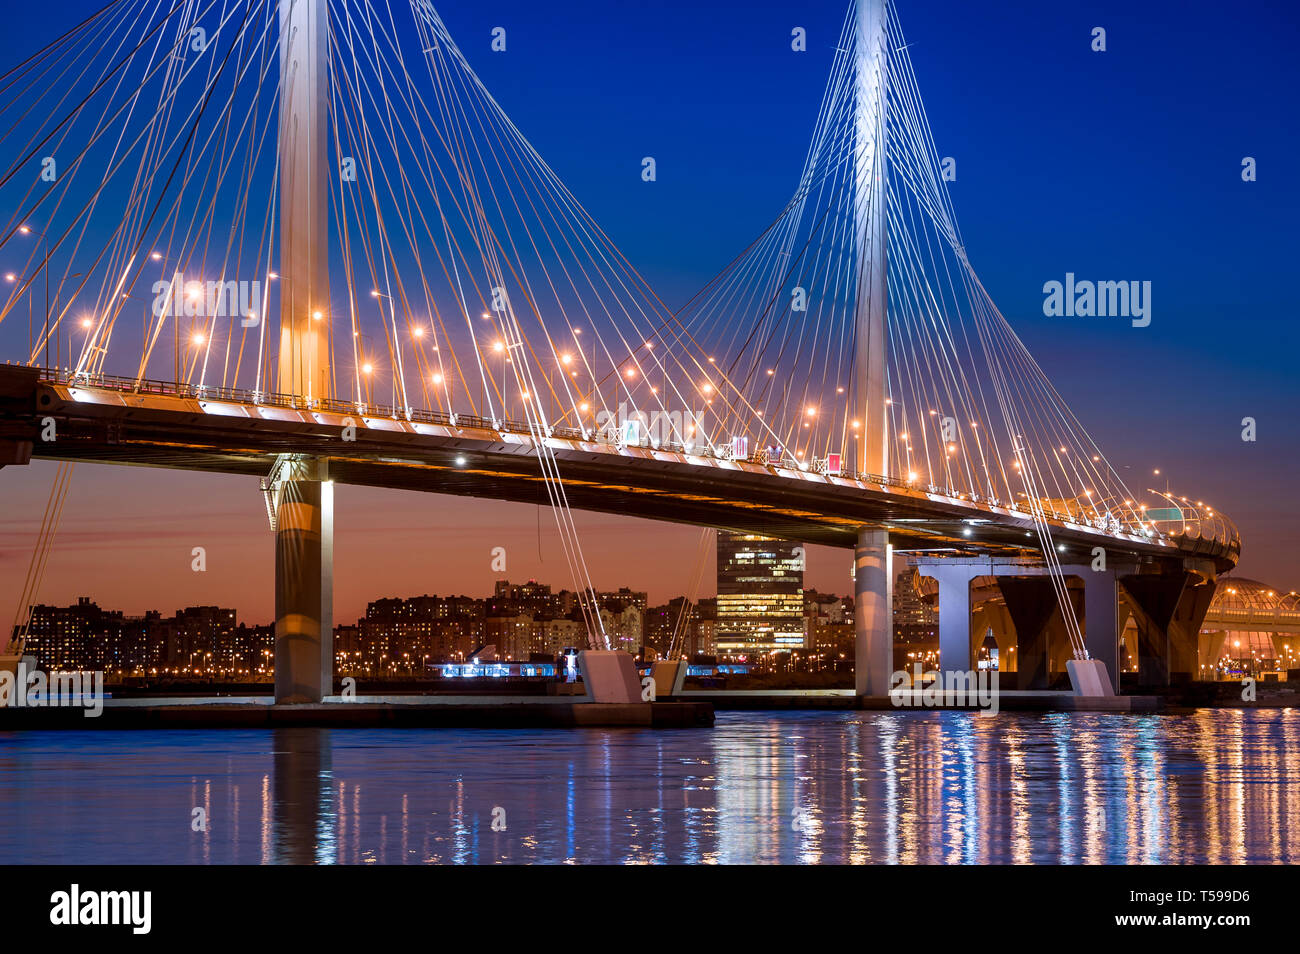 Highspeed road bridge with night illumination. Saint-Petersburg, Russia. Stock Photo